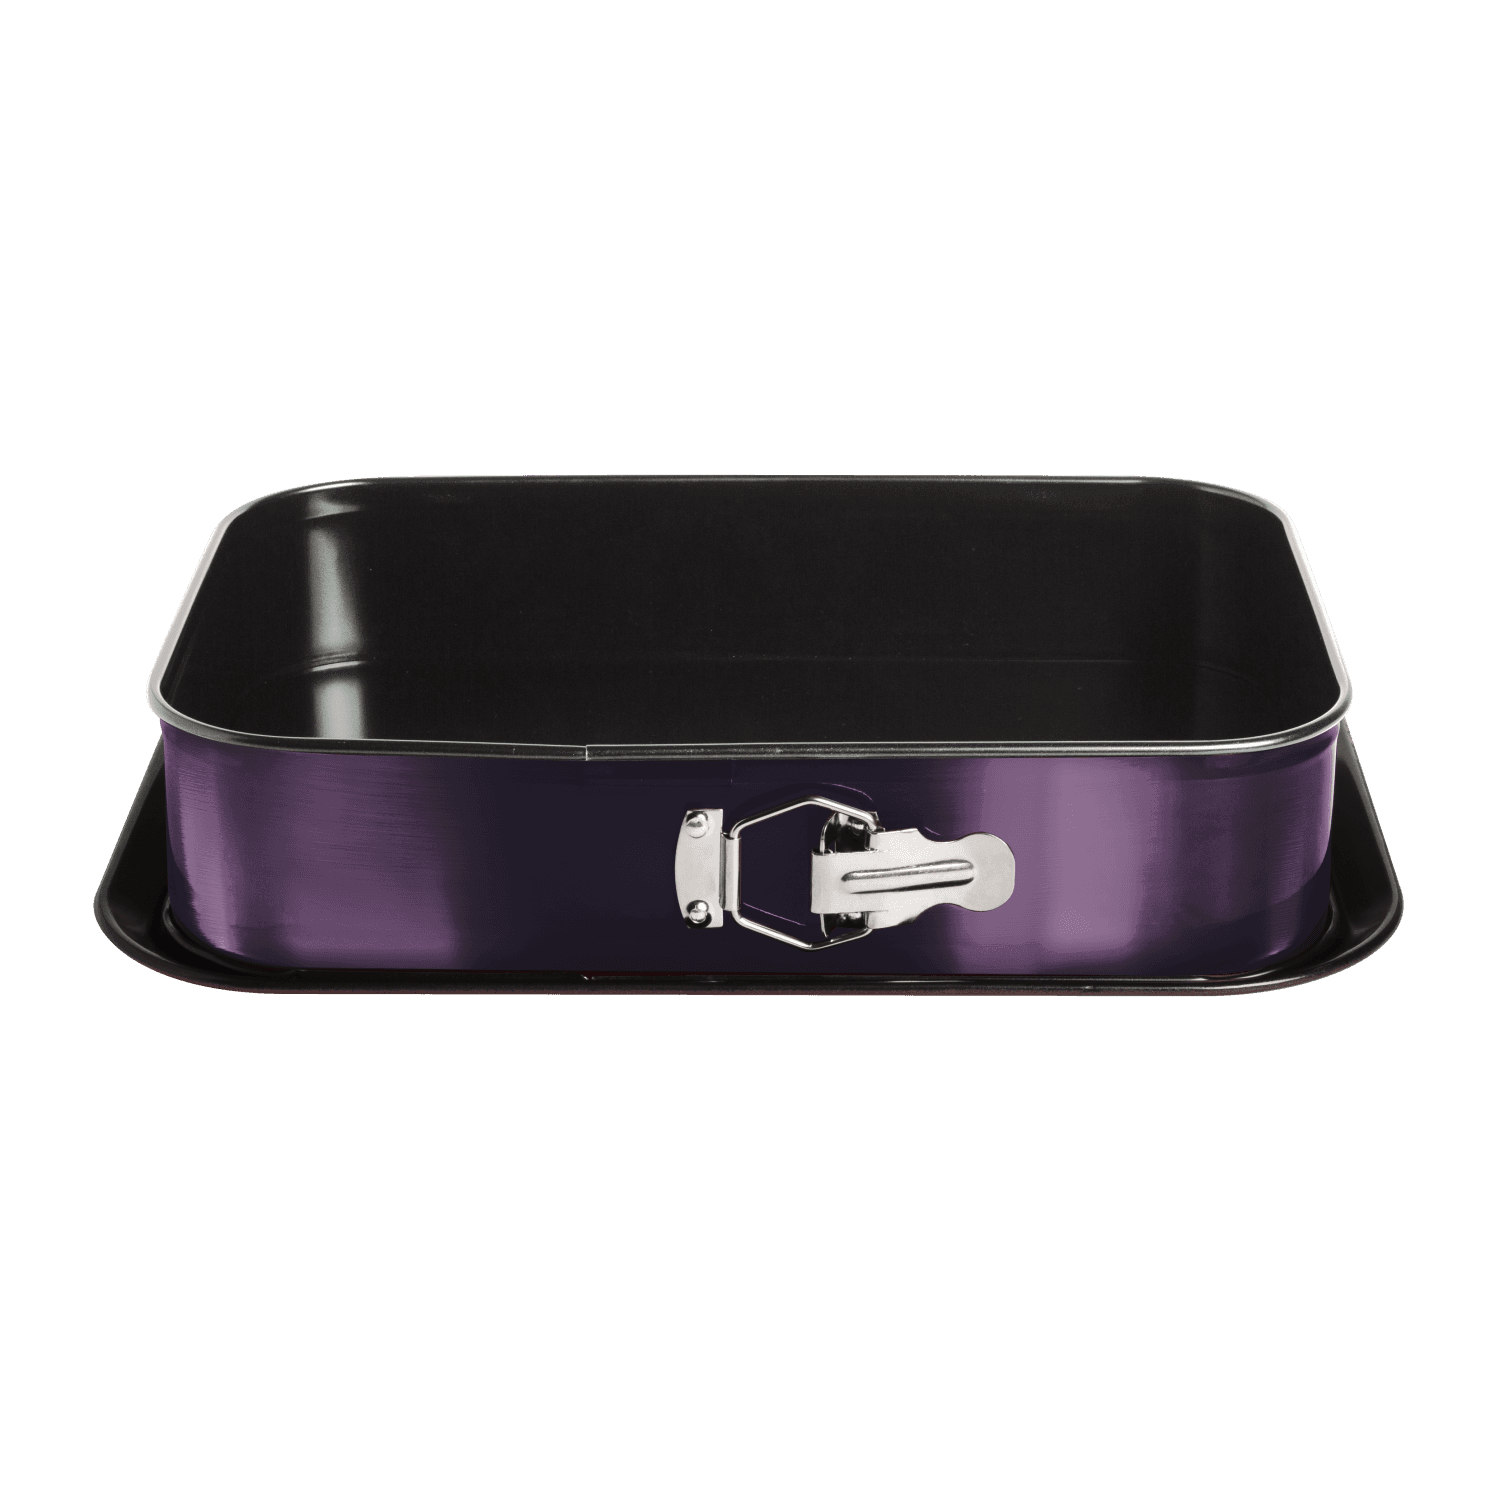 KAUFMAX Modla za tortu pravougaona 39x27cm Purple Eclipse collection